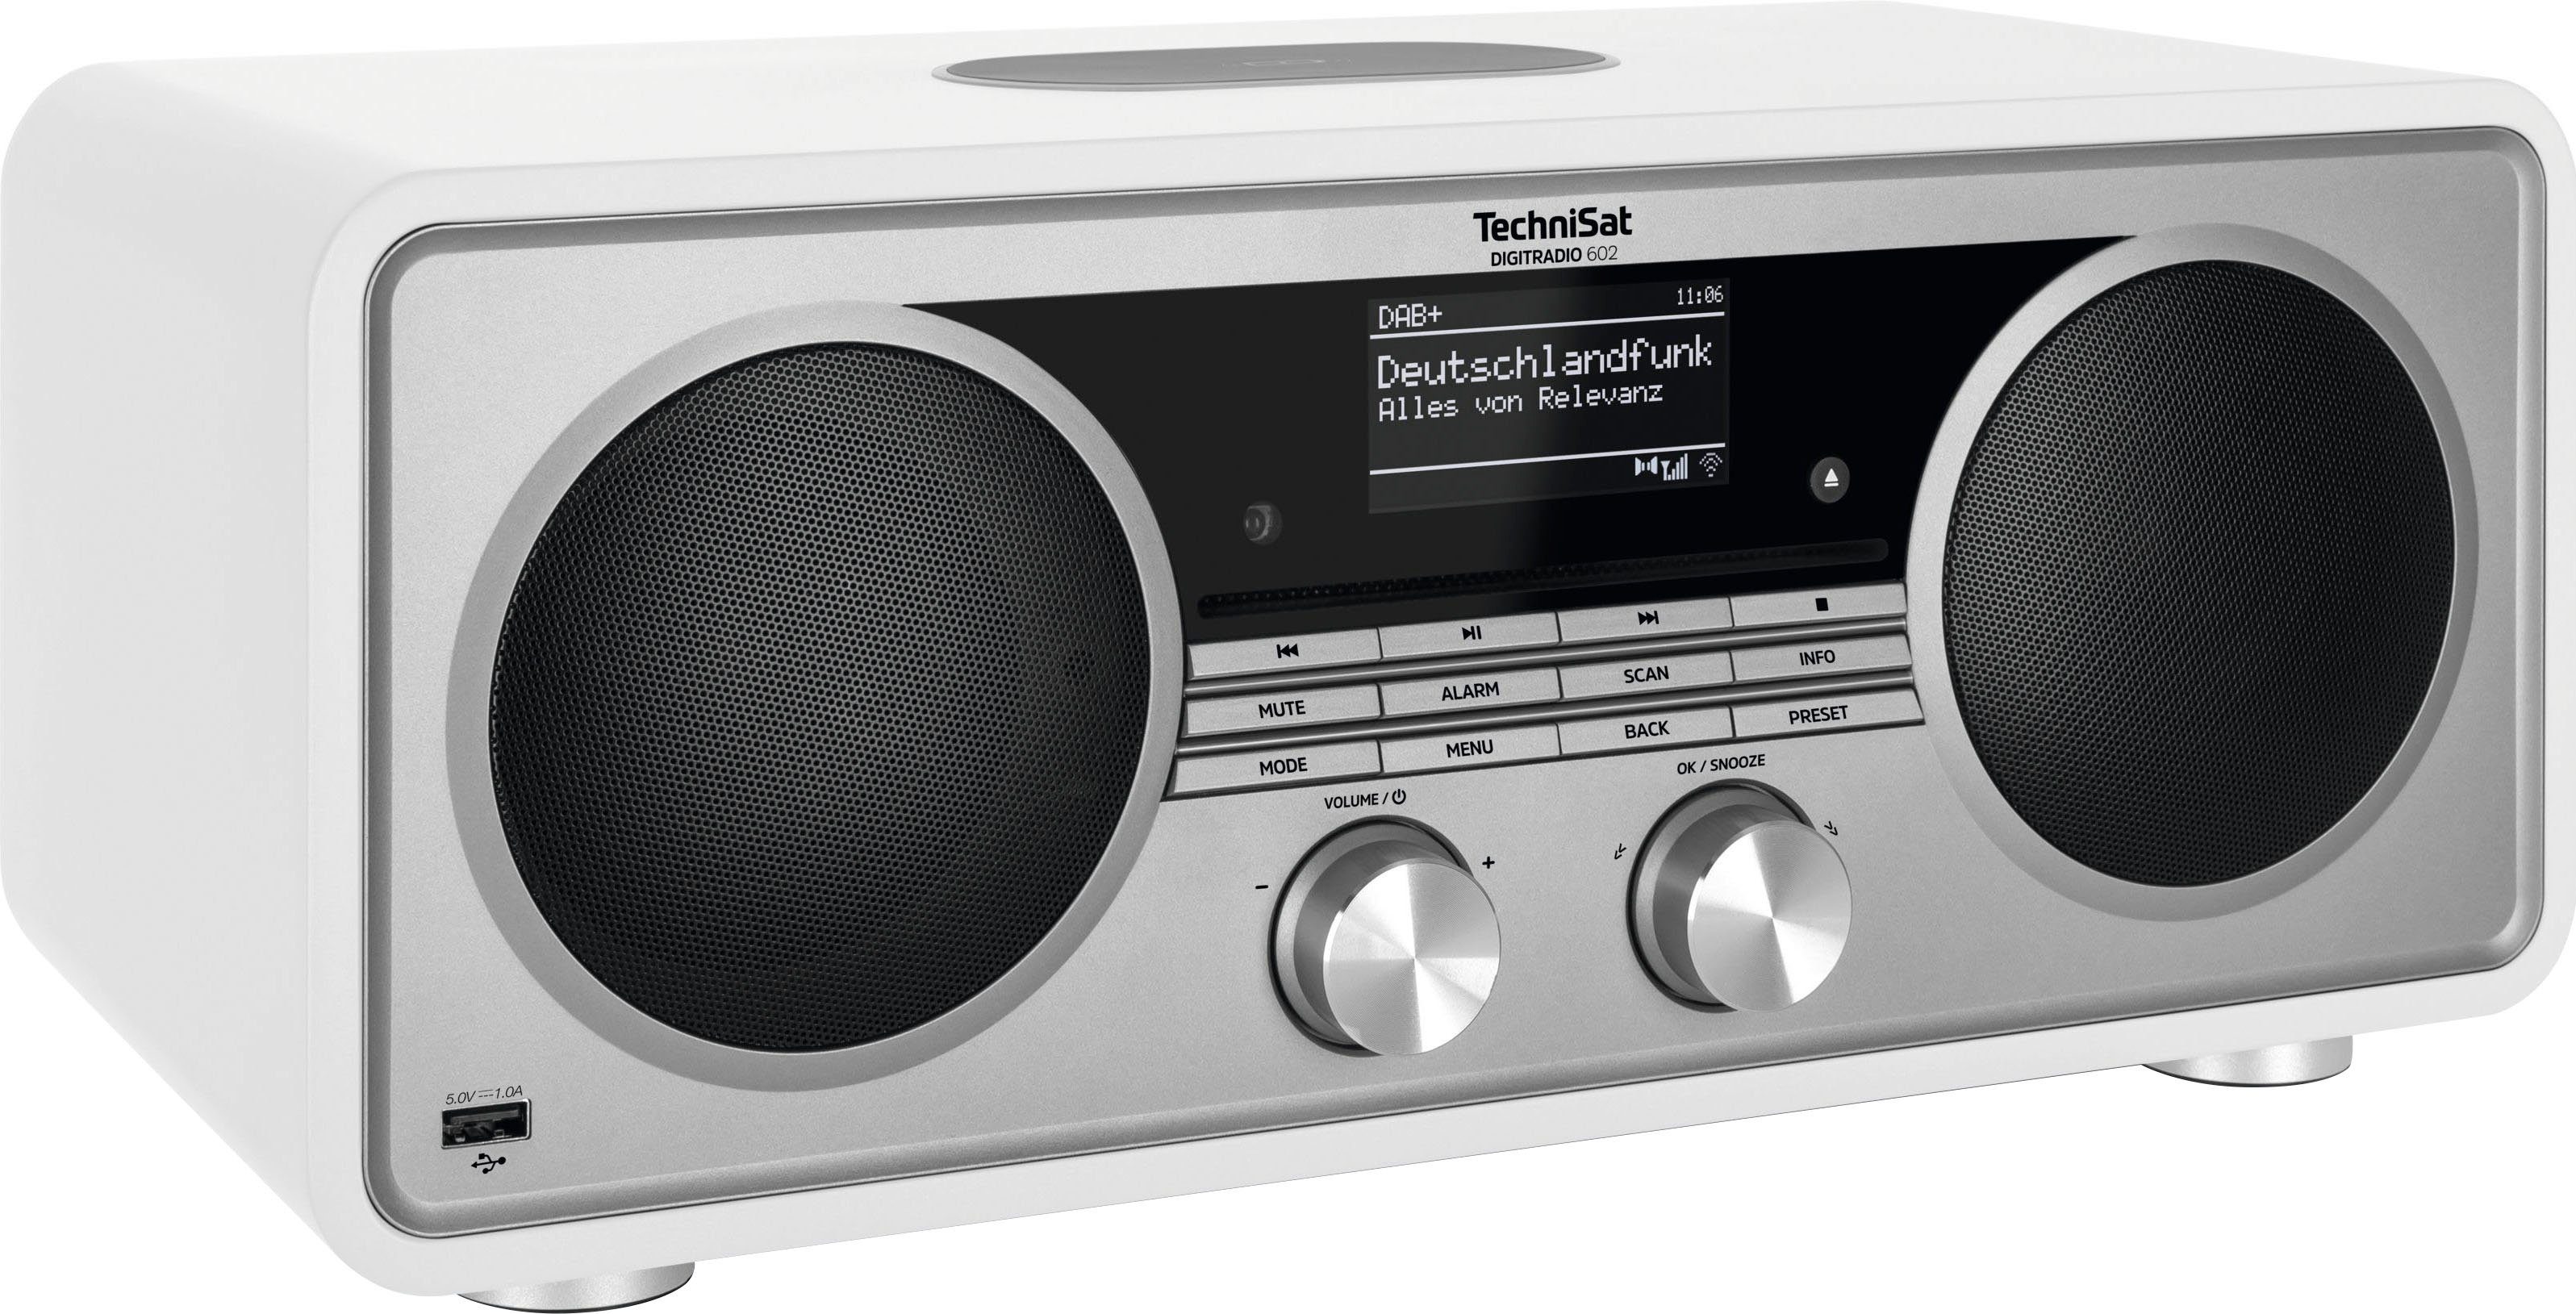 TechniSat DIGITRADIO 602 Internet-Radio UKW 70 (Digitalradio Stereoanlage, (DAB), mit Weiß/Silber W, CD-Player) RDS